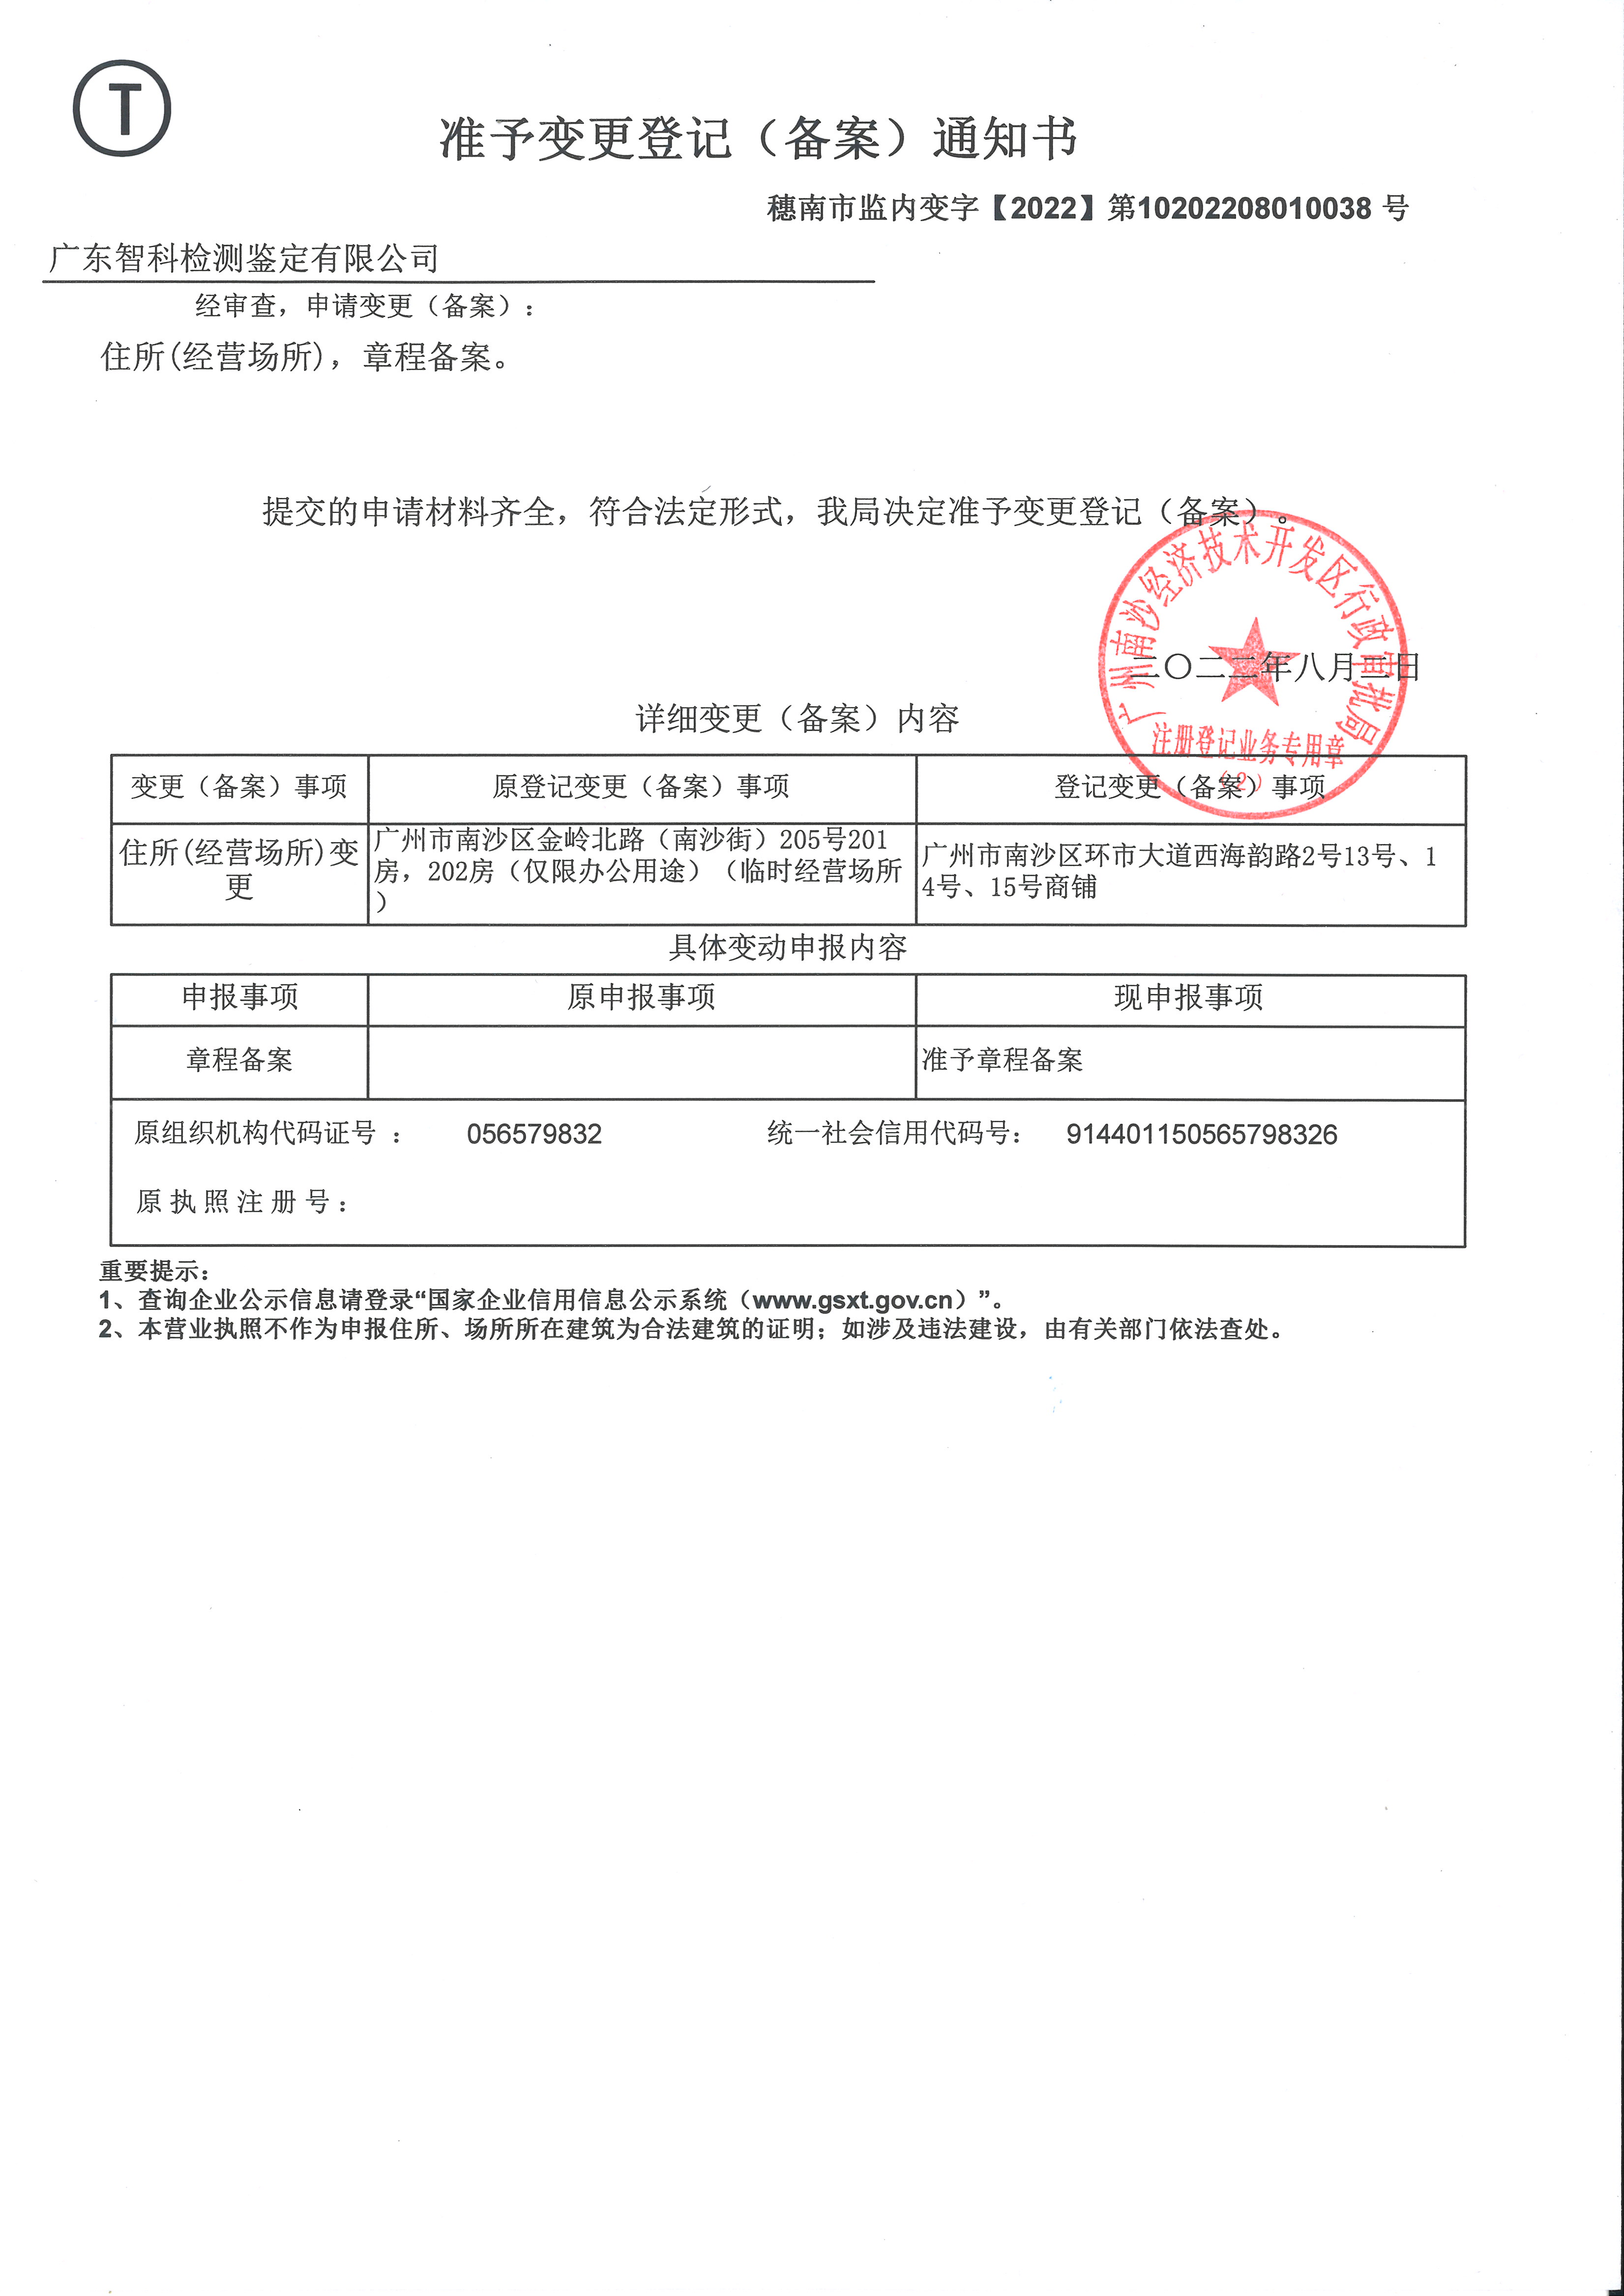 原广东智科检测鉴定有限公司准予变更登记地址通知